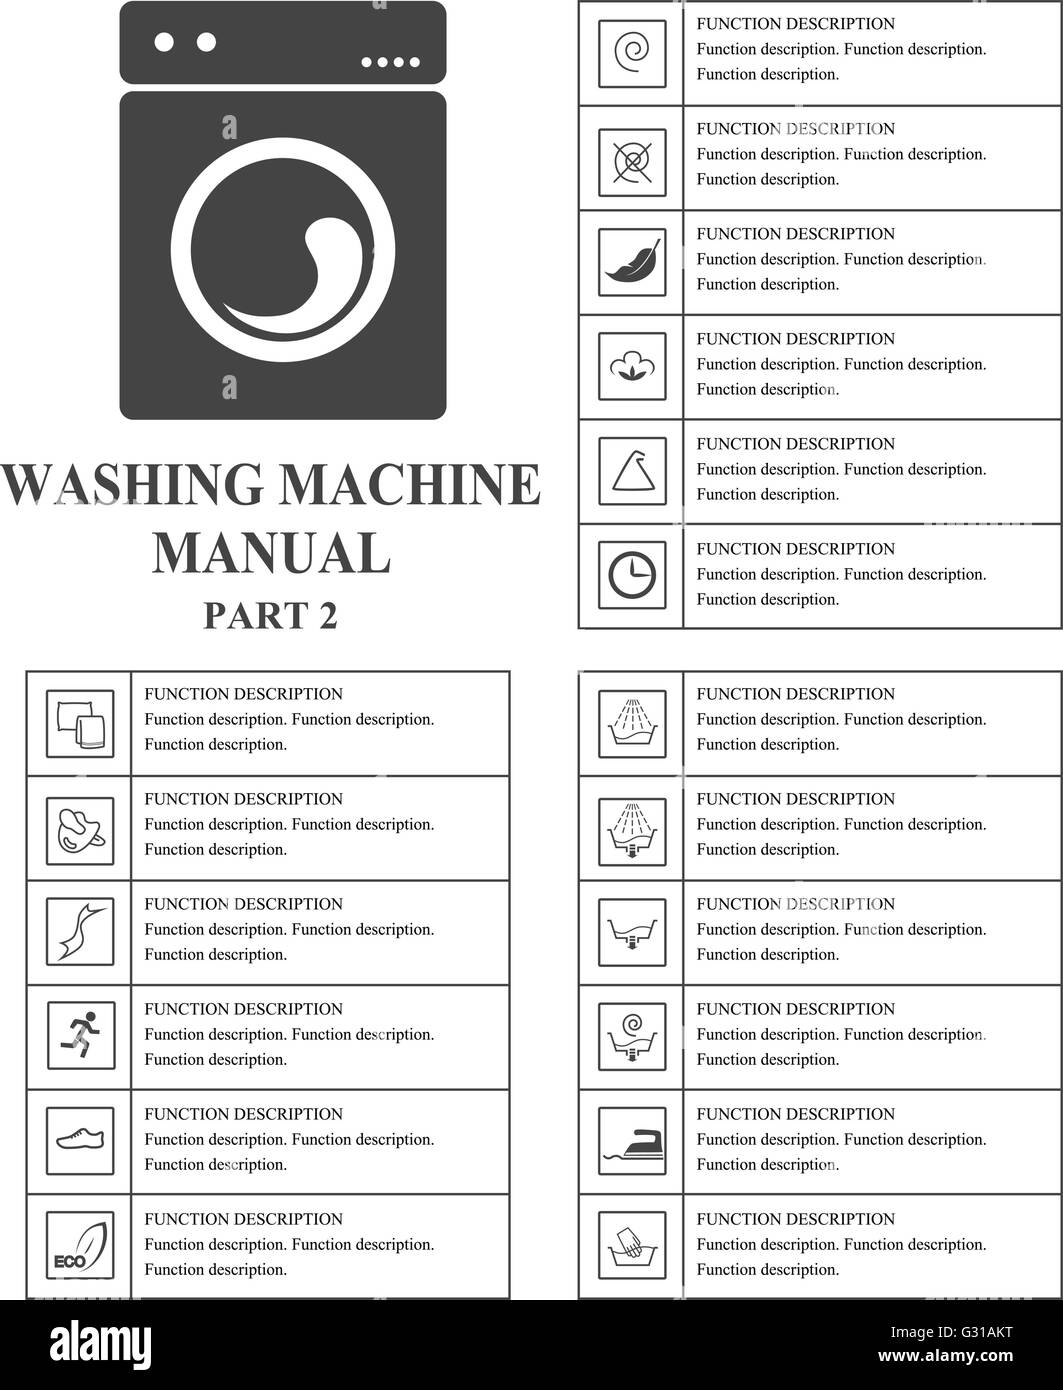 Forno simboli manuale. Parte 1 istruzioni. I segni e i simboli di lavaggio  per lo sfruttamento della macchina manuale. Istruzioni e funzione d  Immagine e Vettoriale - Alamy